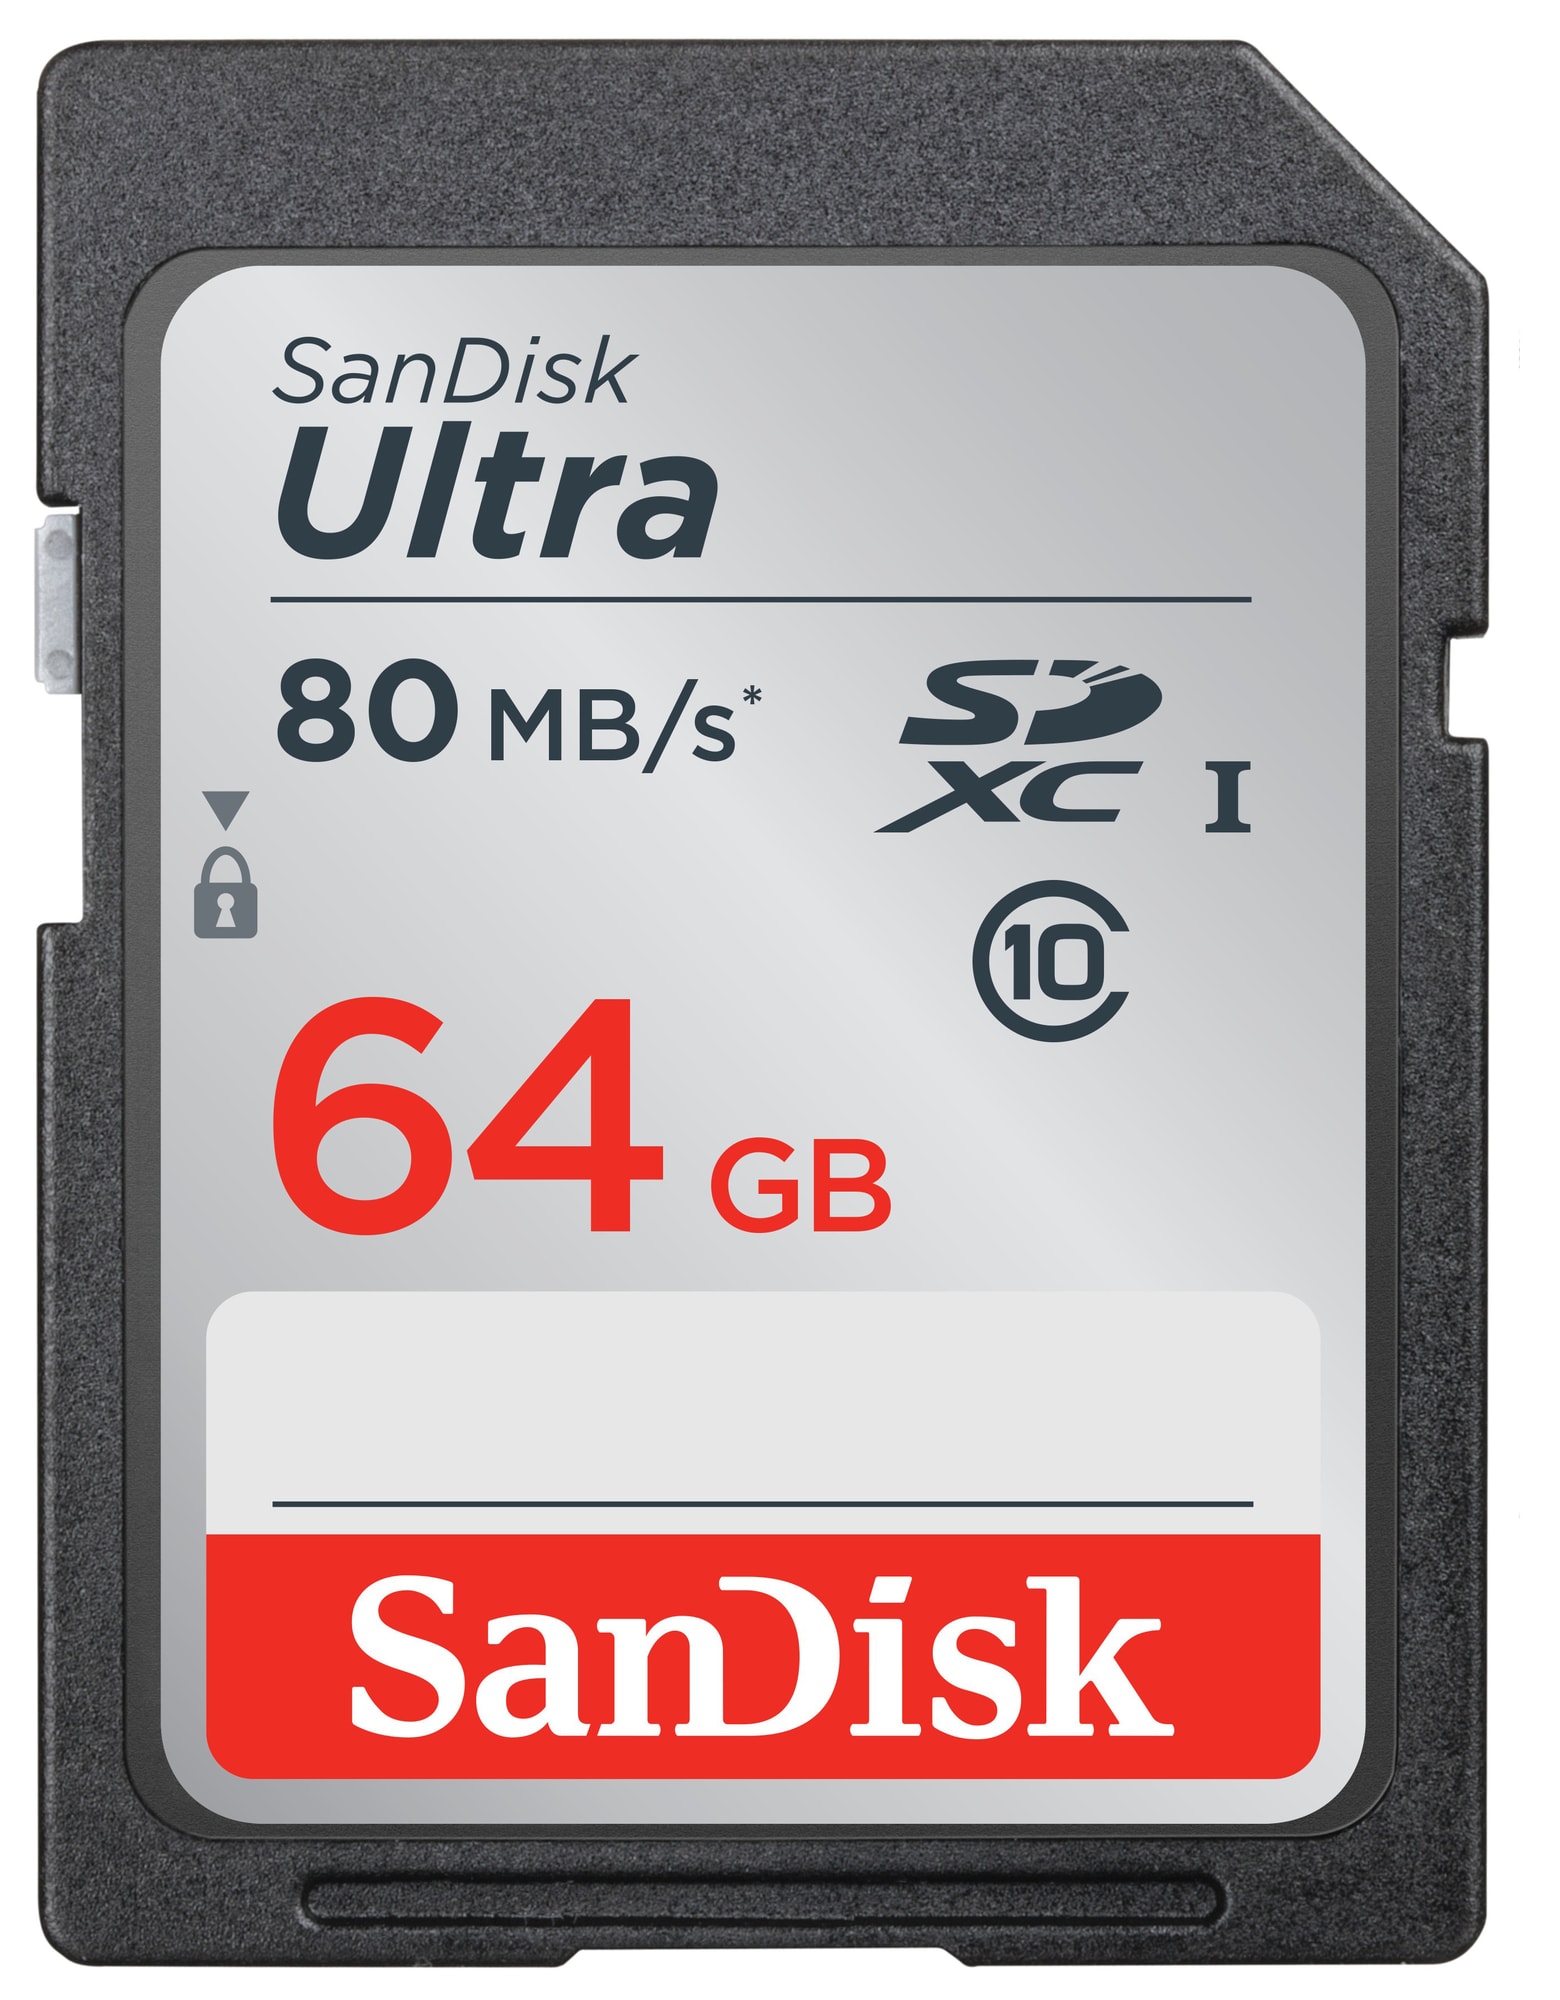 SanDisk Ultra SD minnekort 64 GB - Elkjøp